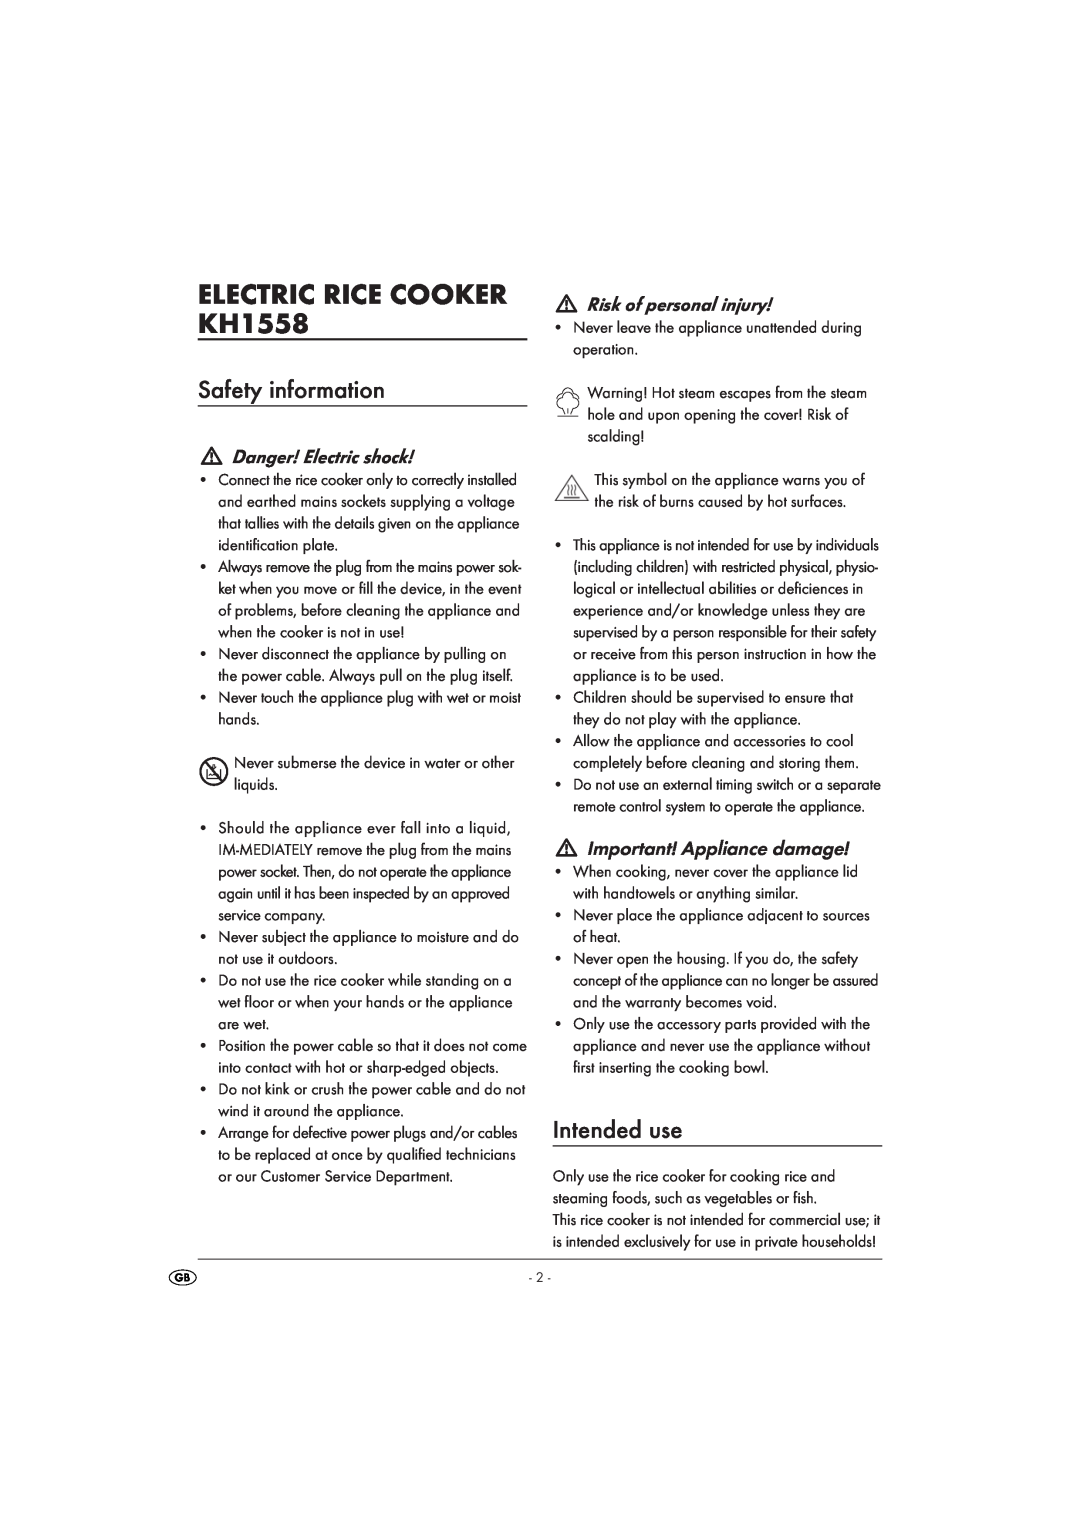 Kompernass KH 1558 ELECTRIC RICE COOKER KH1558, Safety information, Intended use, Danger! Electric shock 